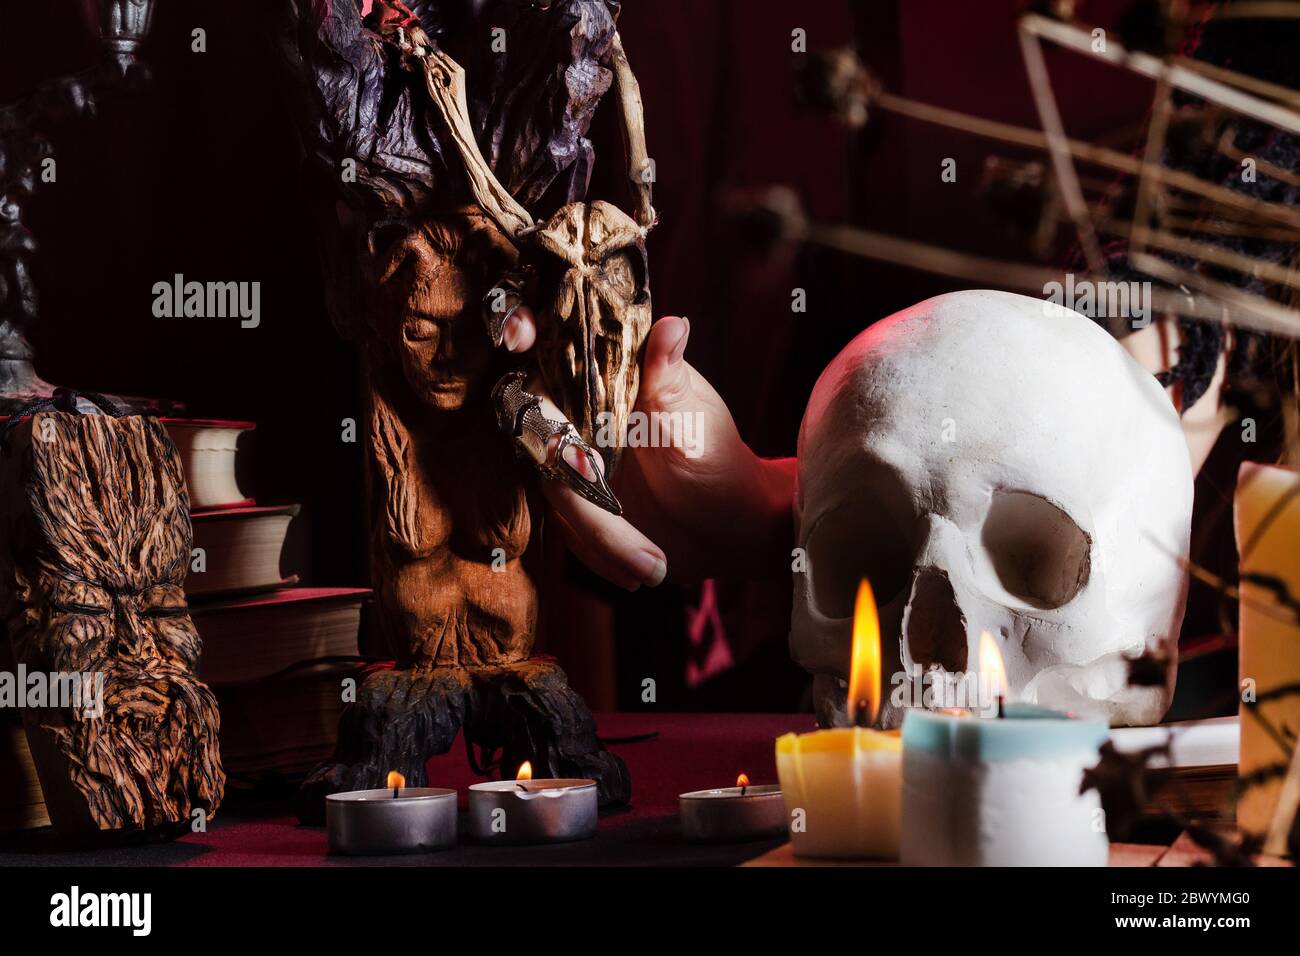 Foto einer weiblichen Hexenhand an einem Tisch mit Totenkopf, magischen  Amulette und Kerzen mit hölzernen Vogelschädel Stockfotografie - Alamy